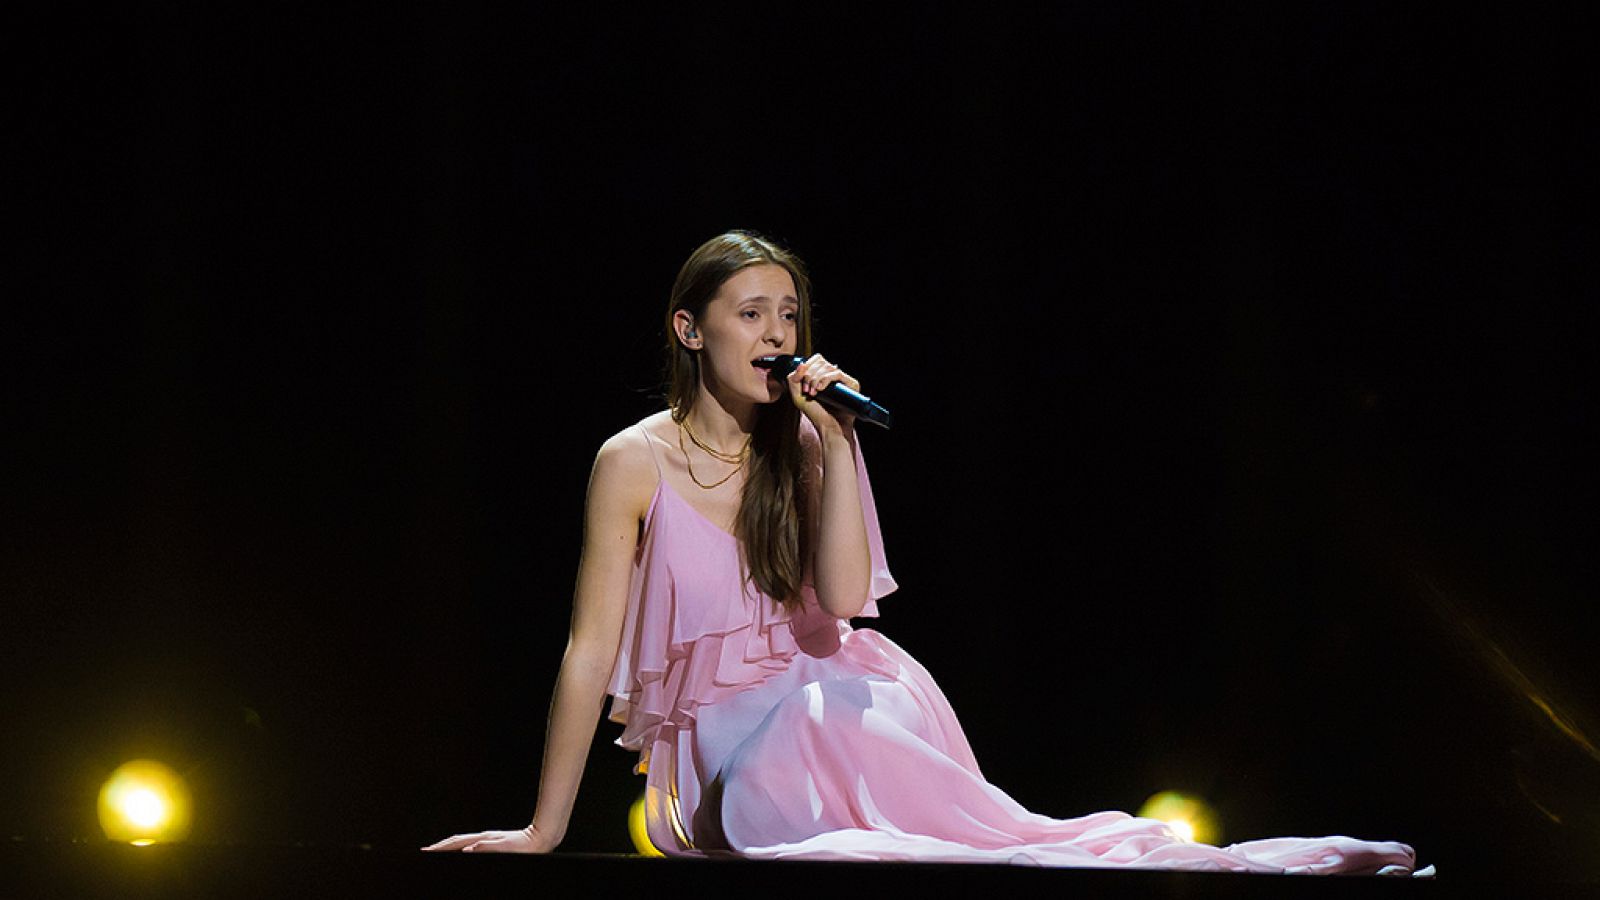 Eurovisión - Lituania: Ieva Zasimauskaite canta "When we're old" en la final de Eurovisión 2018 - rtve.es